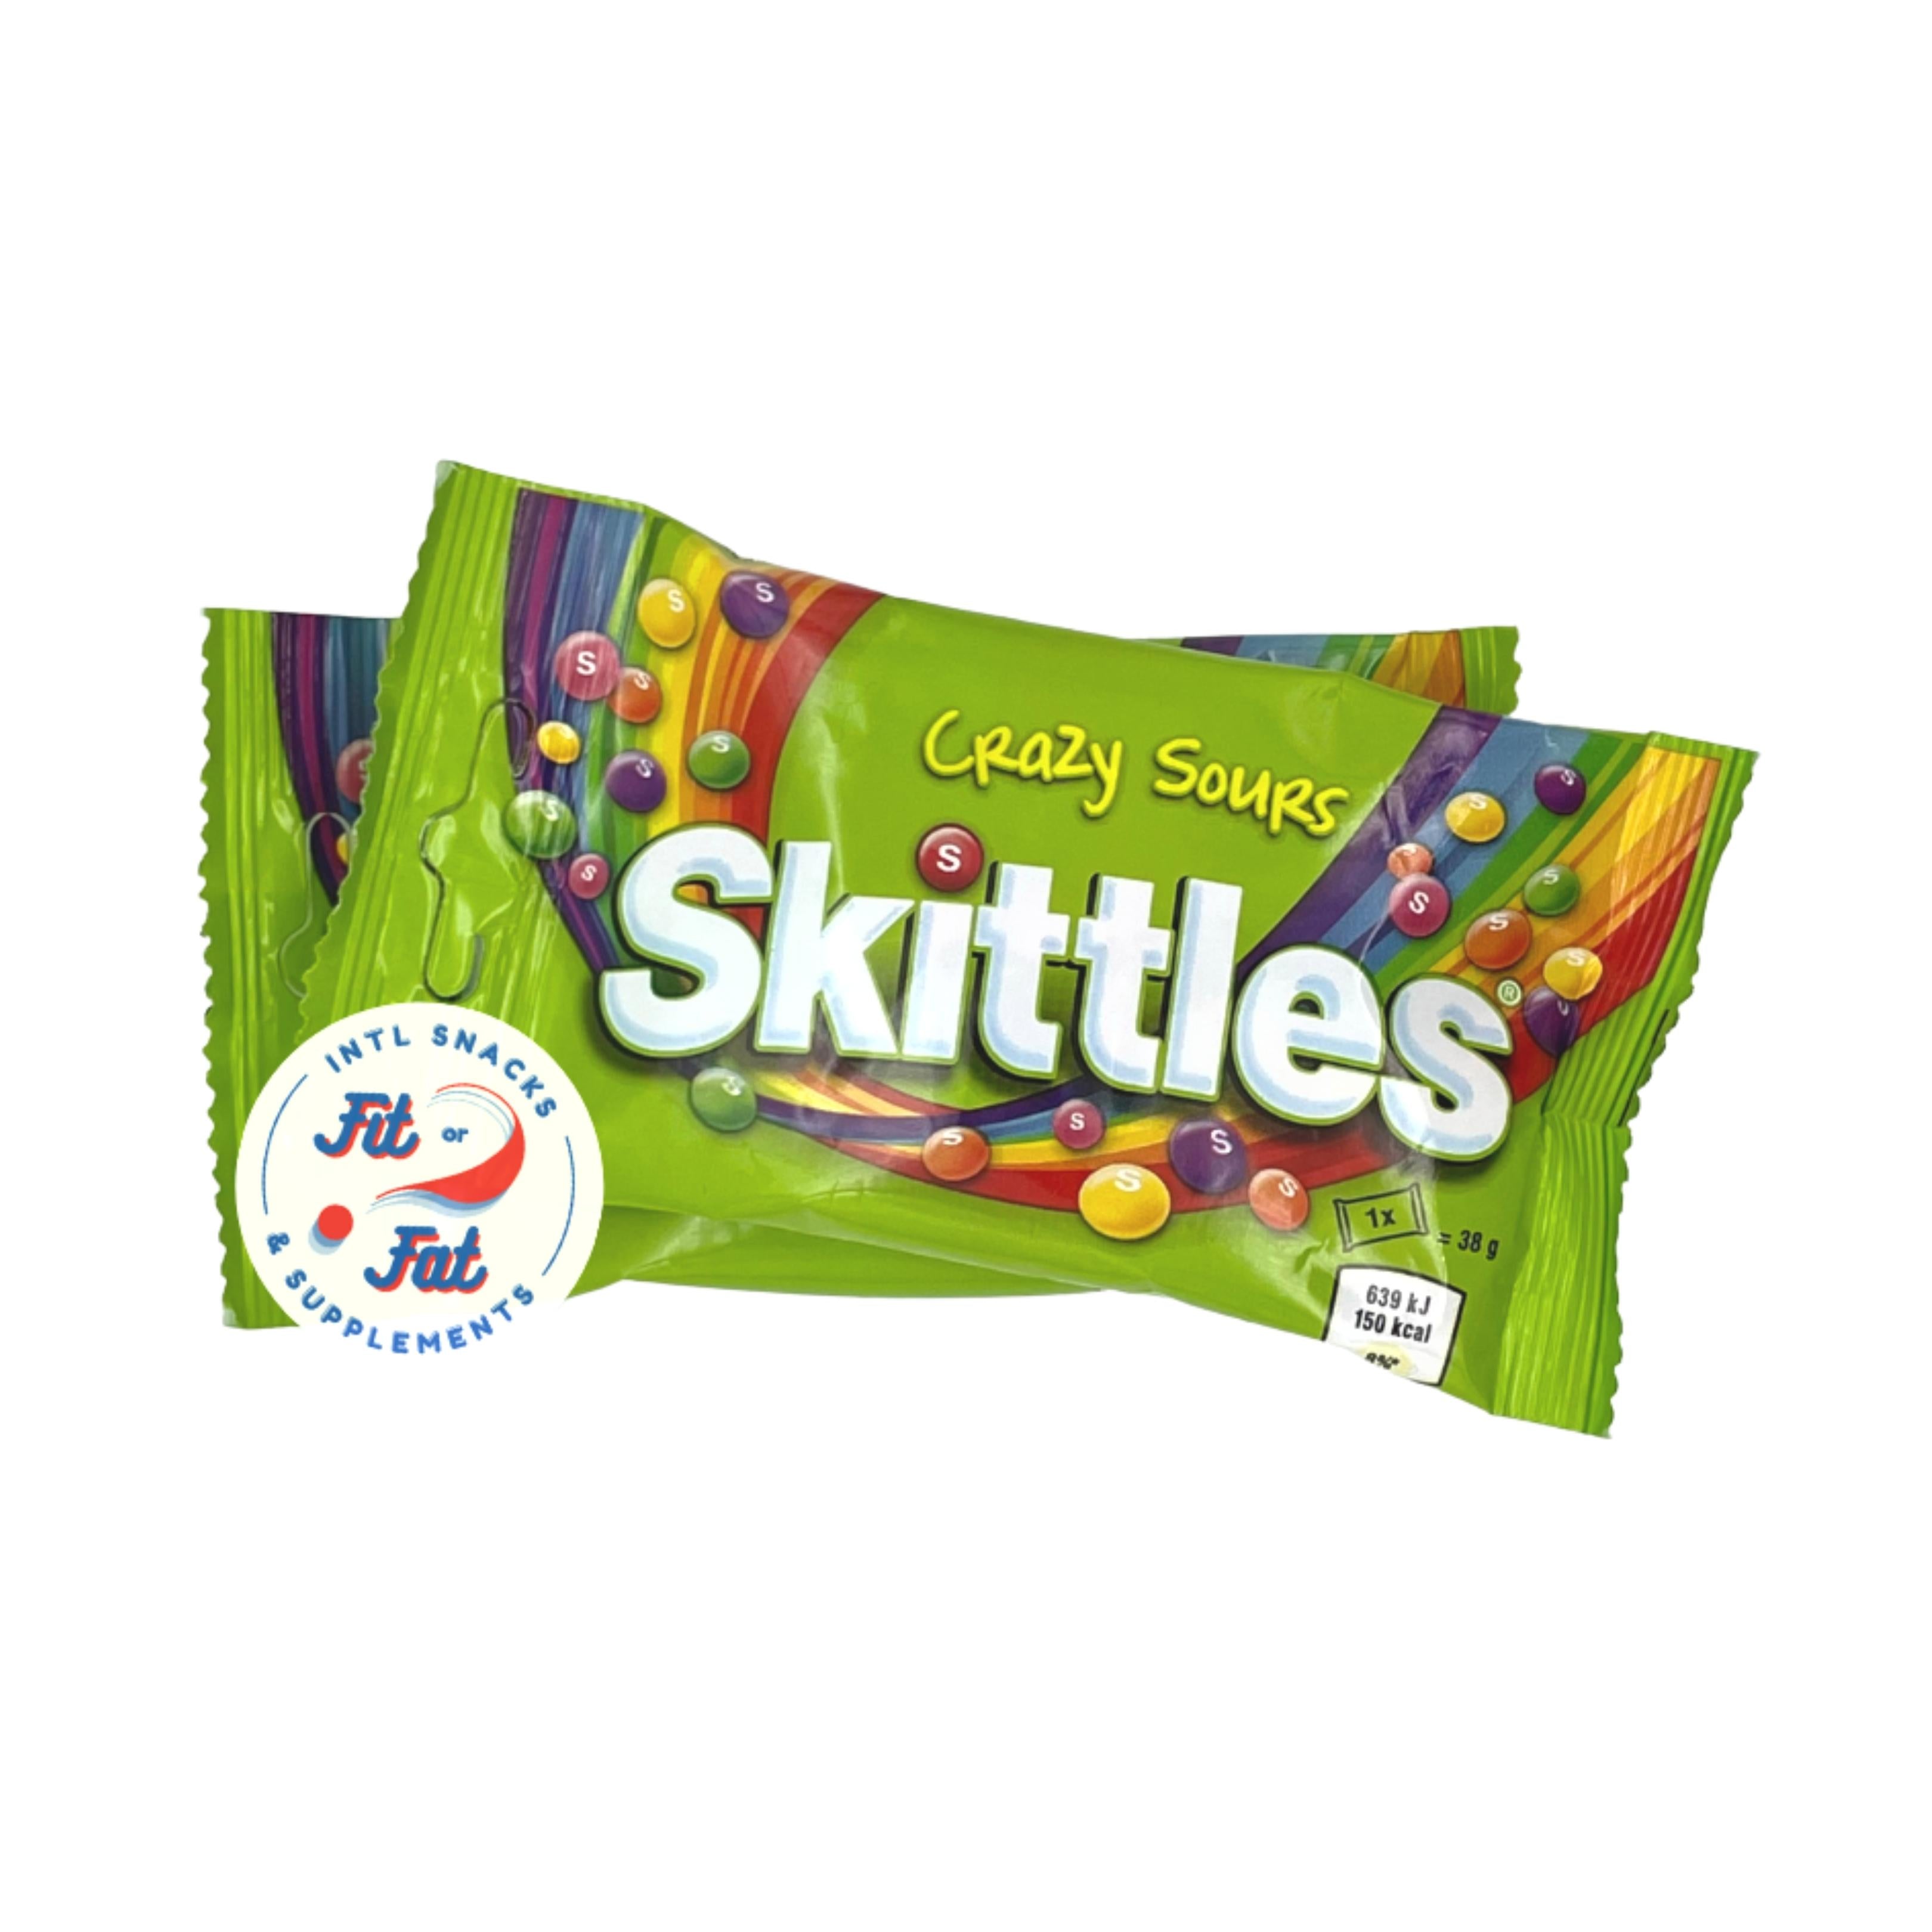 Skittles Crazy Sour 38 g